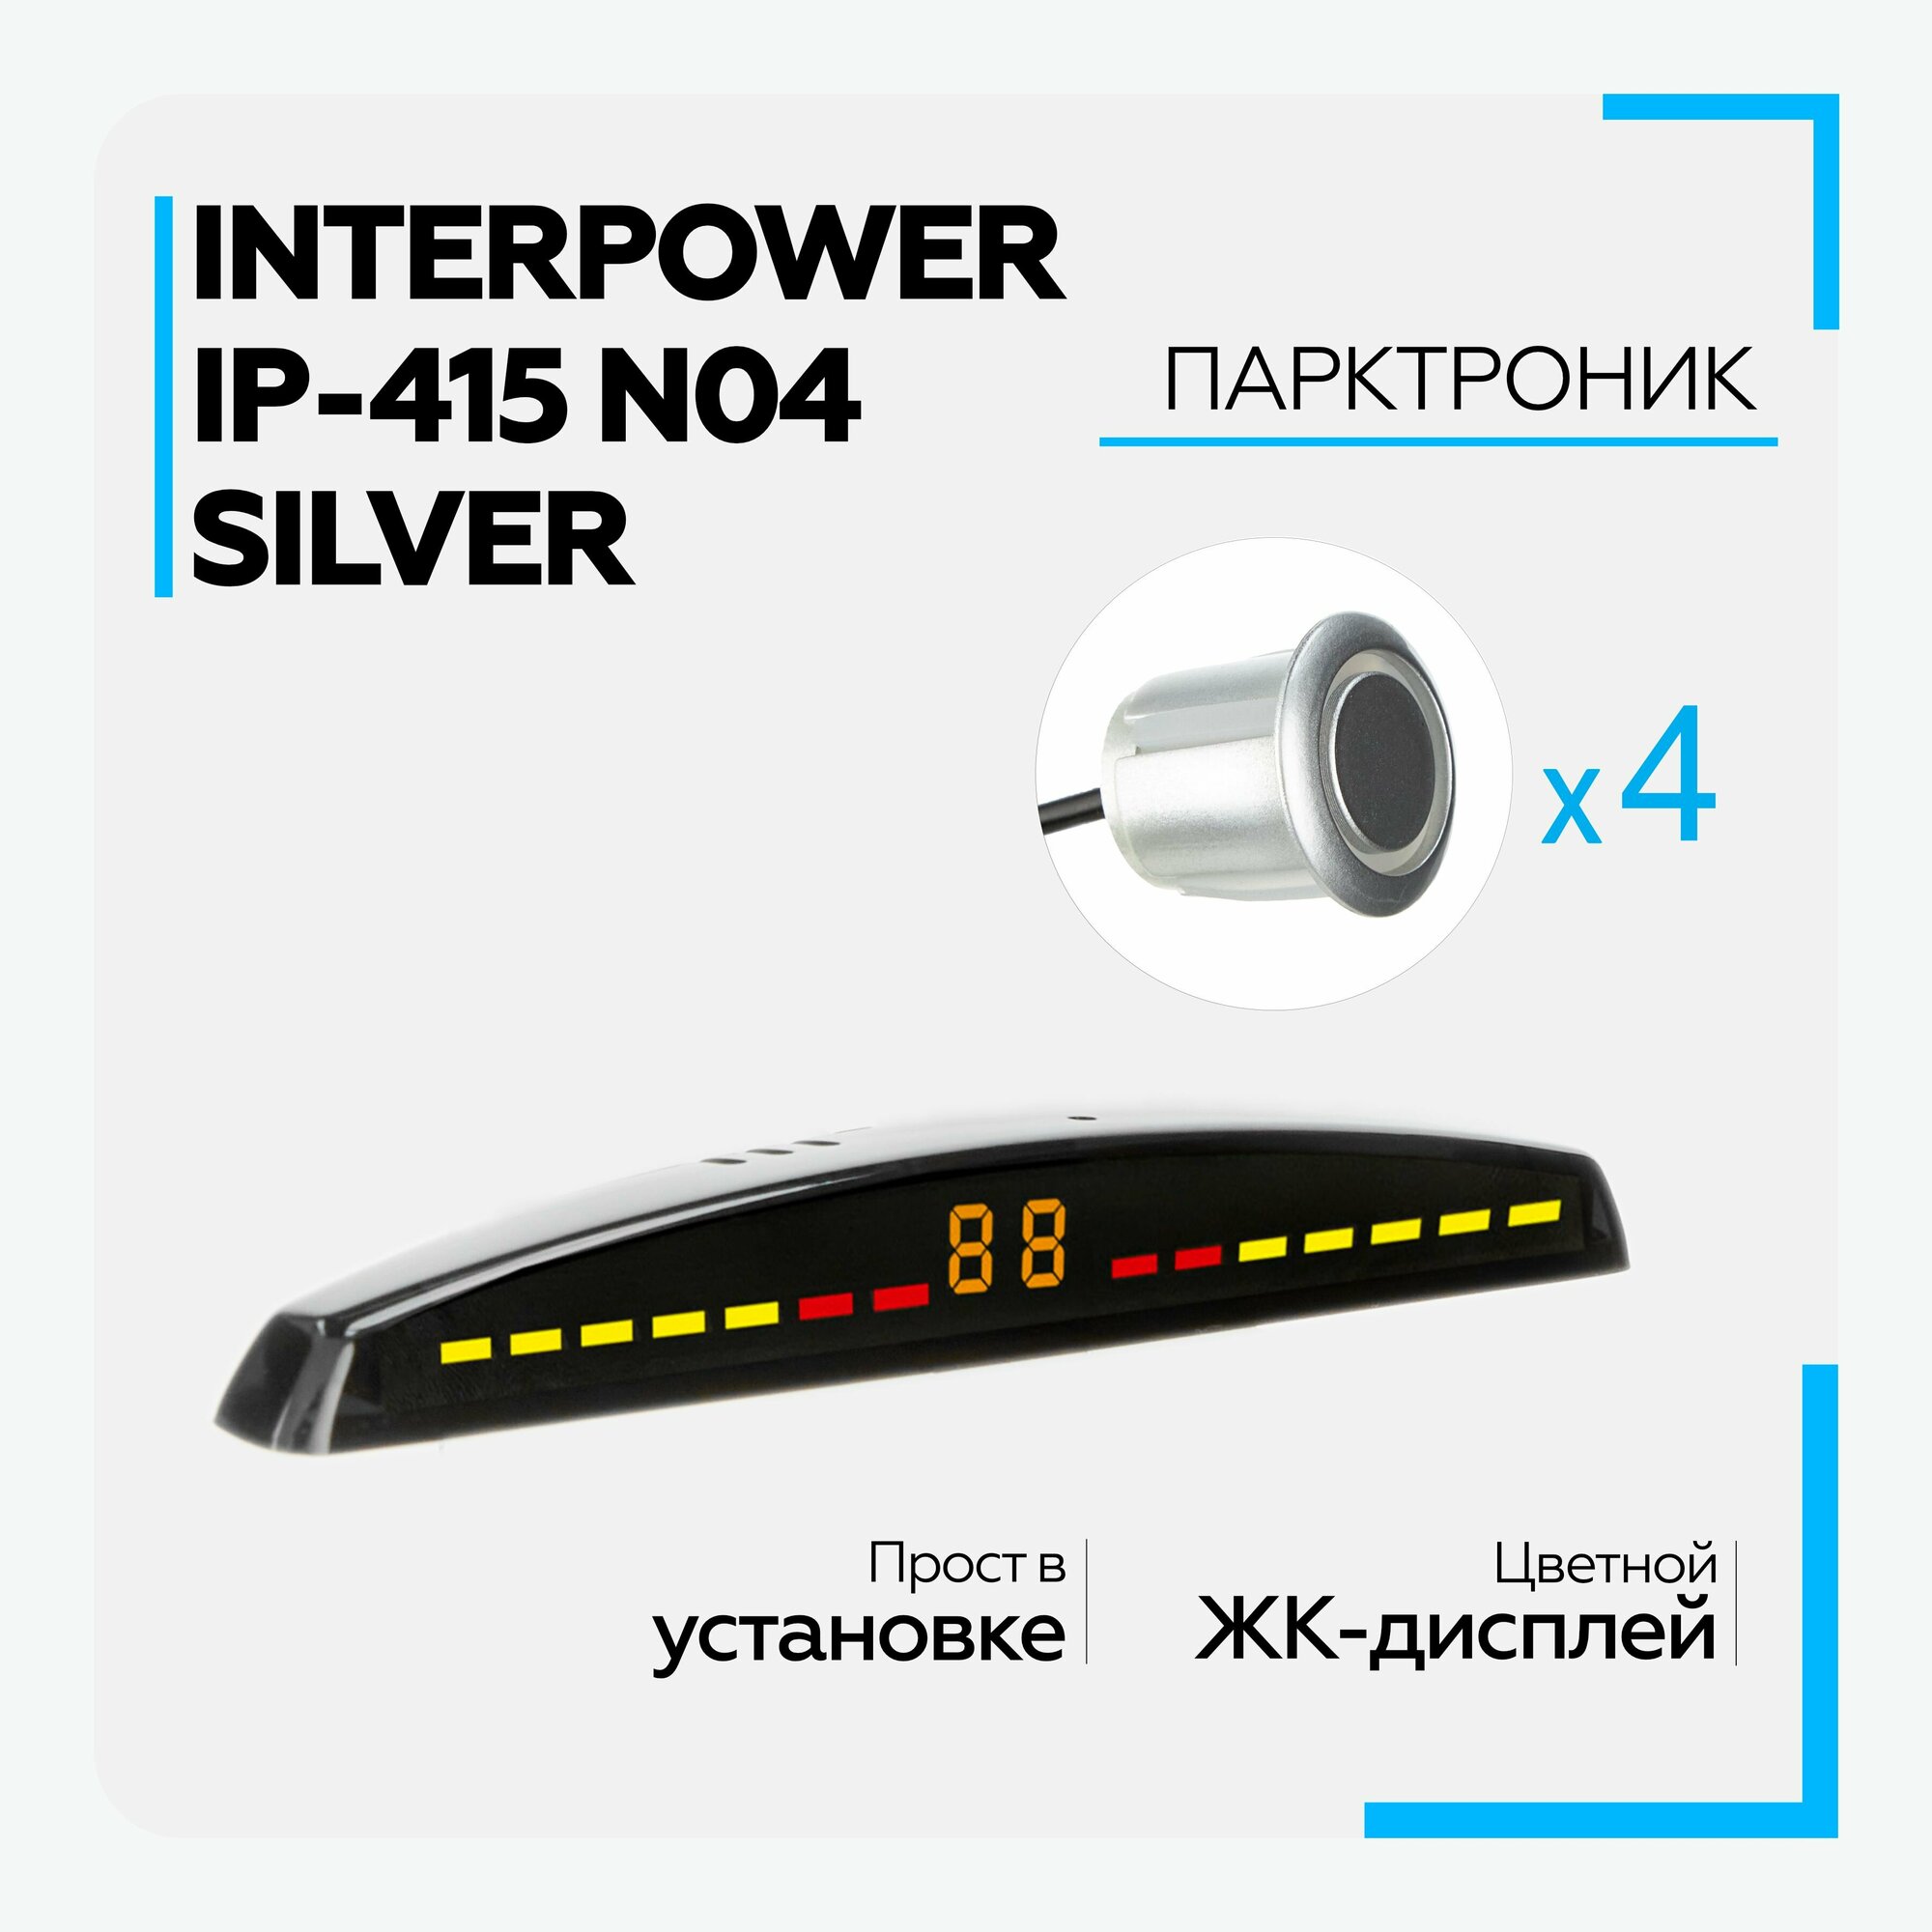 Парктроник (Interpower) IP-415 N04 Silver для заднего и переднего бампера, 4 датчика, цвет серебристый, 19мм, с цветным дисплеем